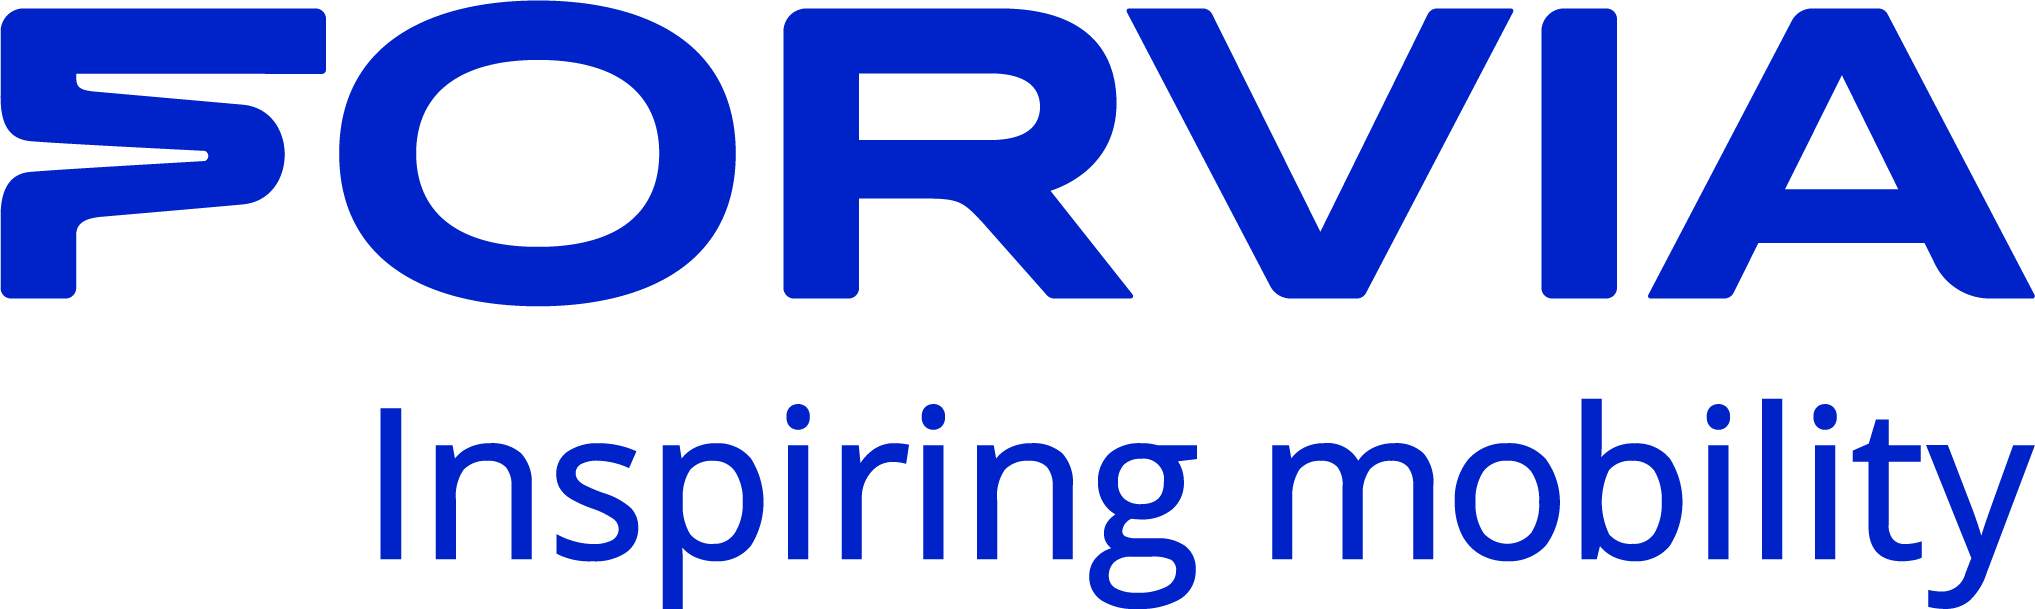 Forvia-Logo